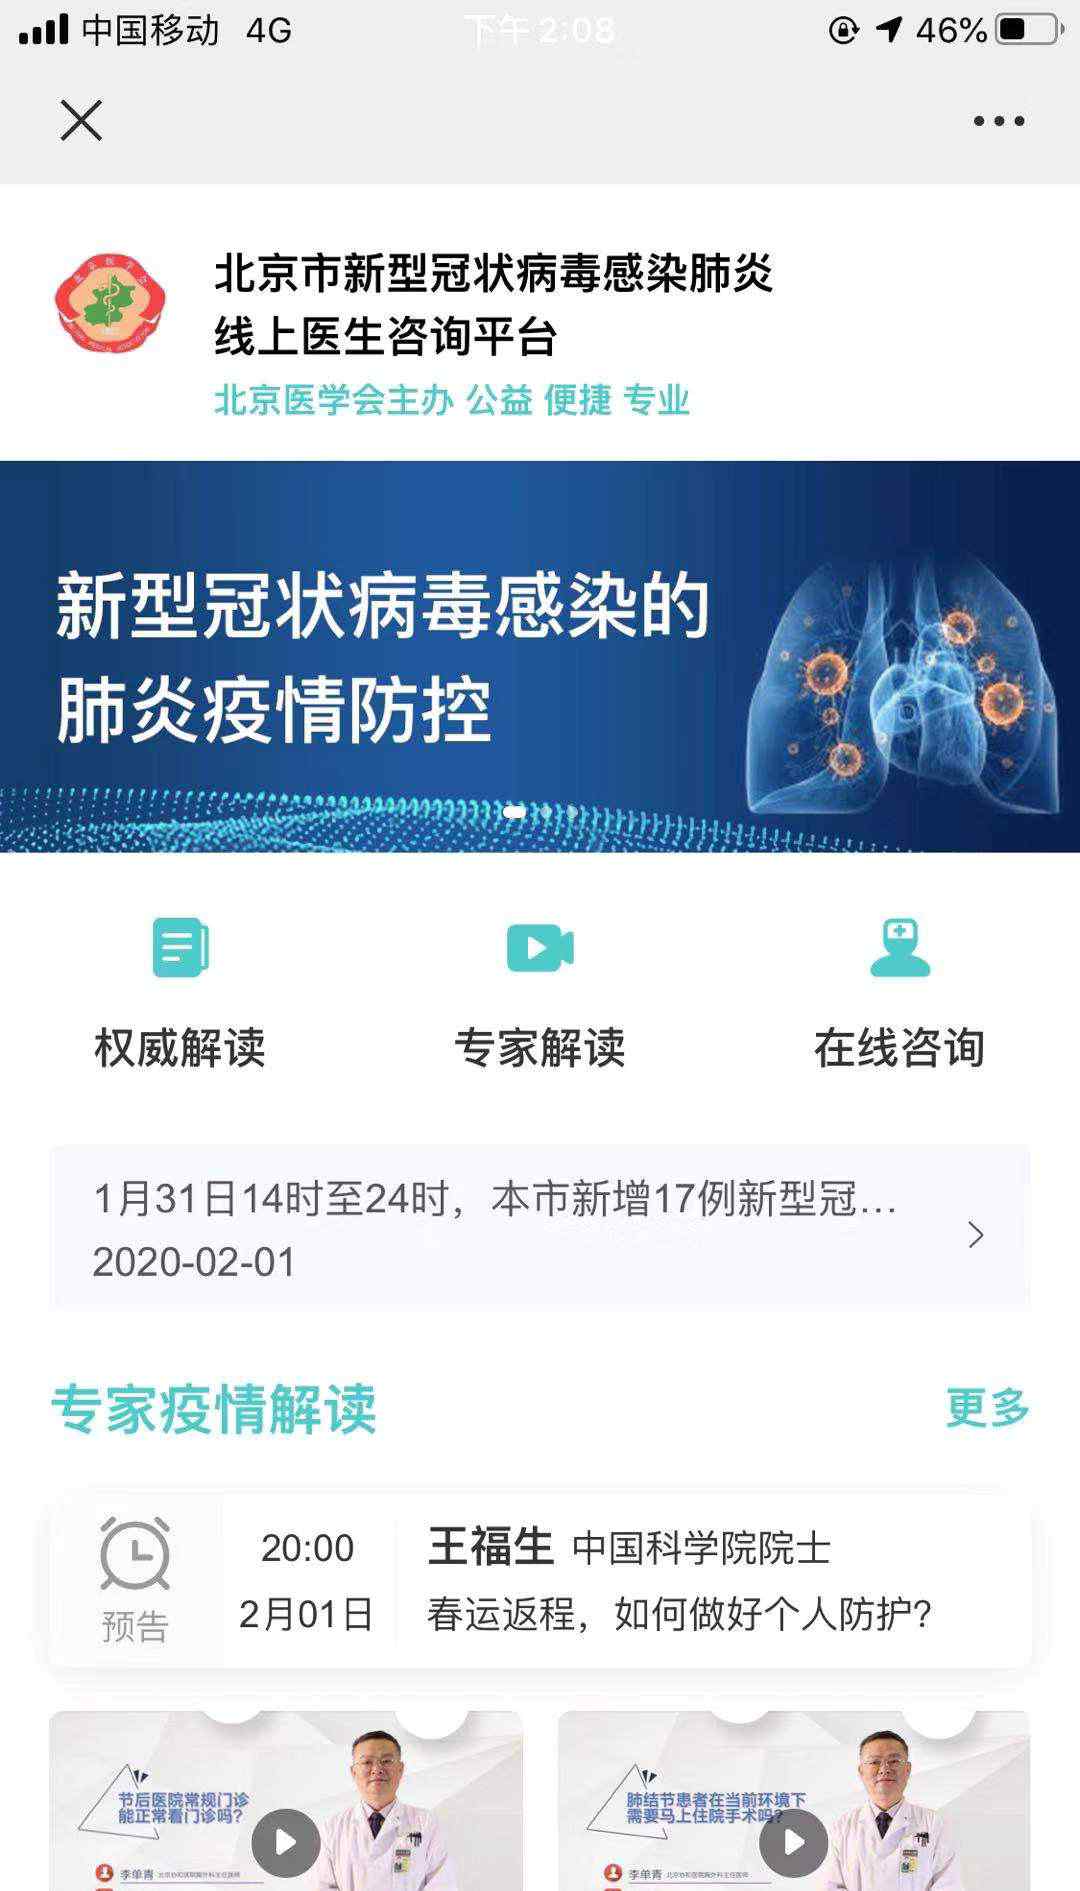 医生在线免费咨询 北京新型肺炎线上医生咨询平台开通 24小时在线免费答疑